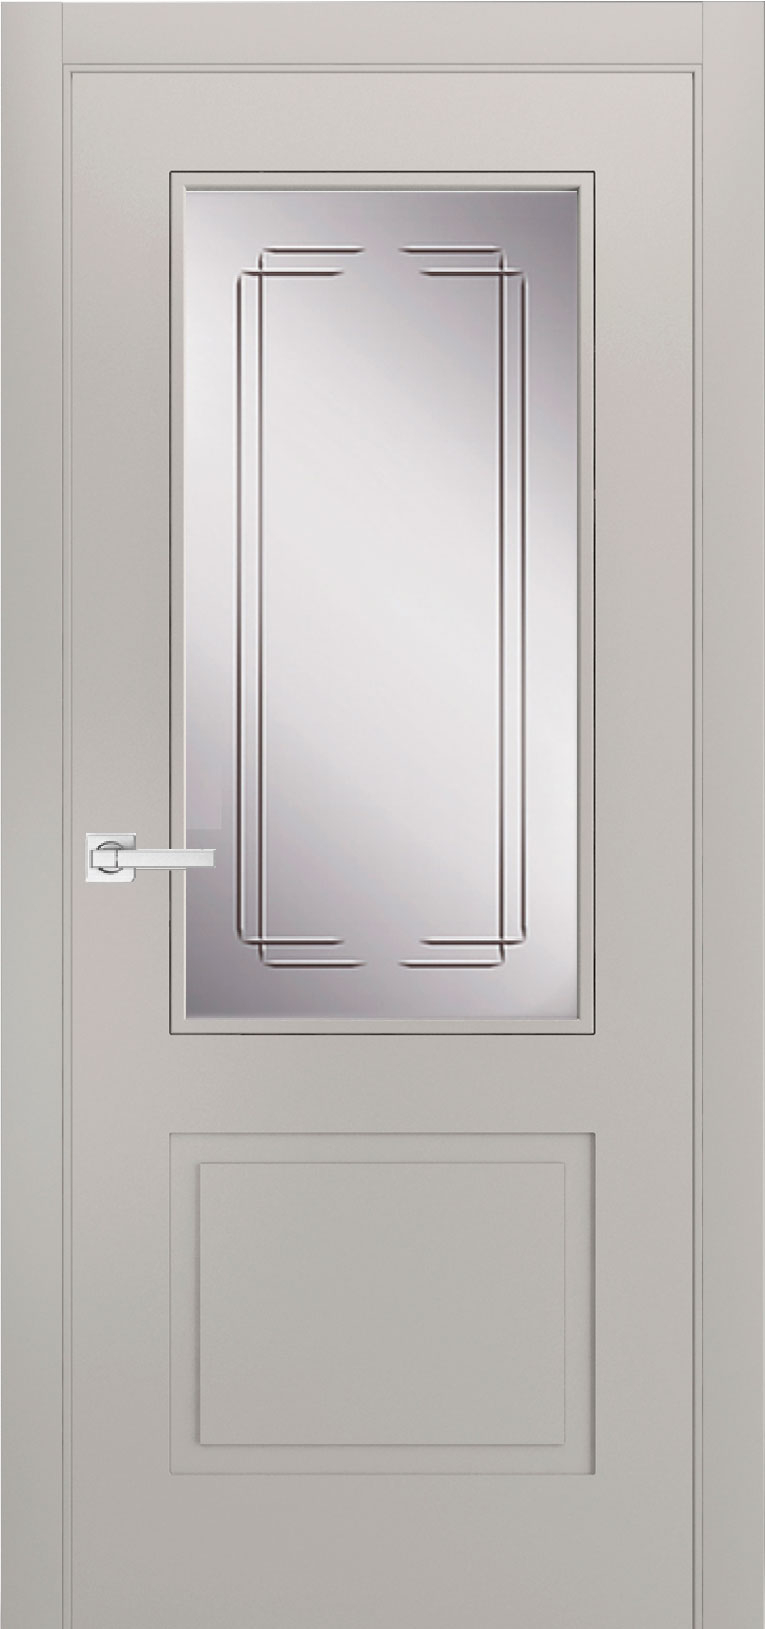 межкомнатные двери  Дариано Манчестер МС2 гравировка Турин эмаль